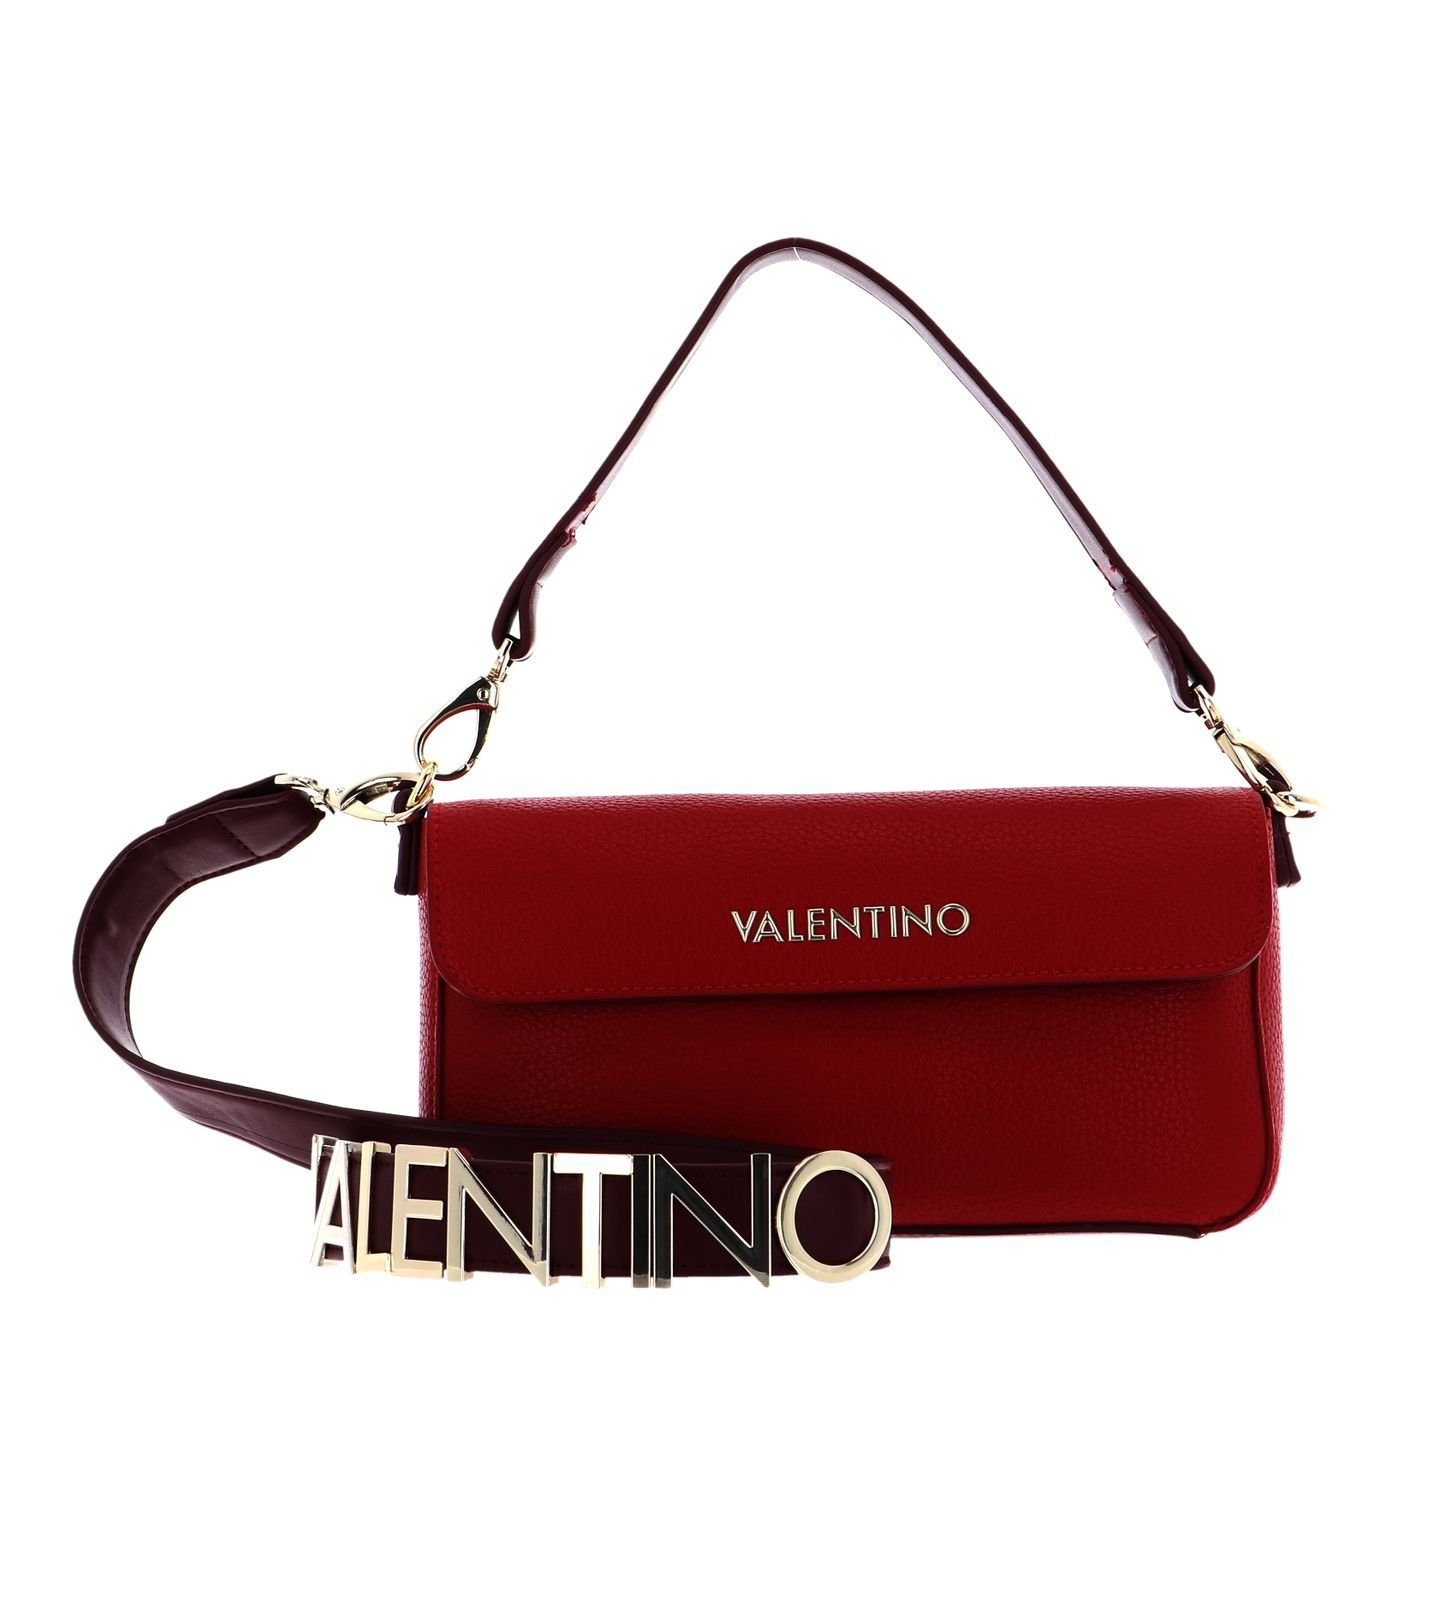 VALENTINO BAGS Umhängetasche »Alexia« online kaufen | OTTO